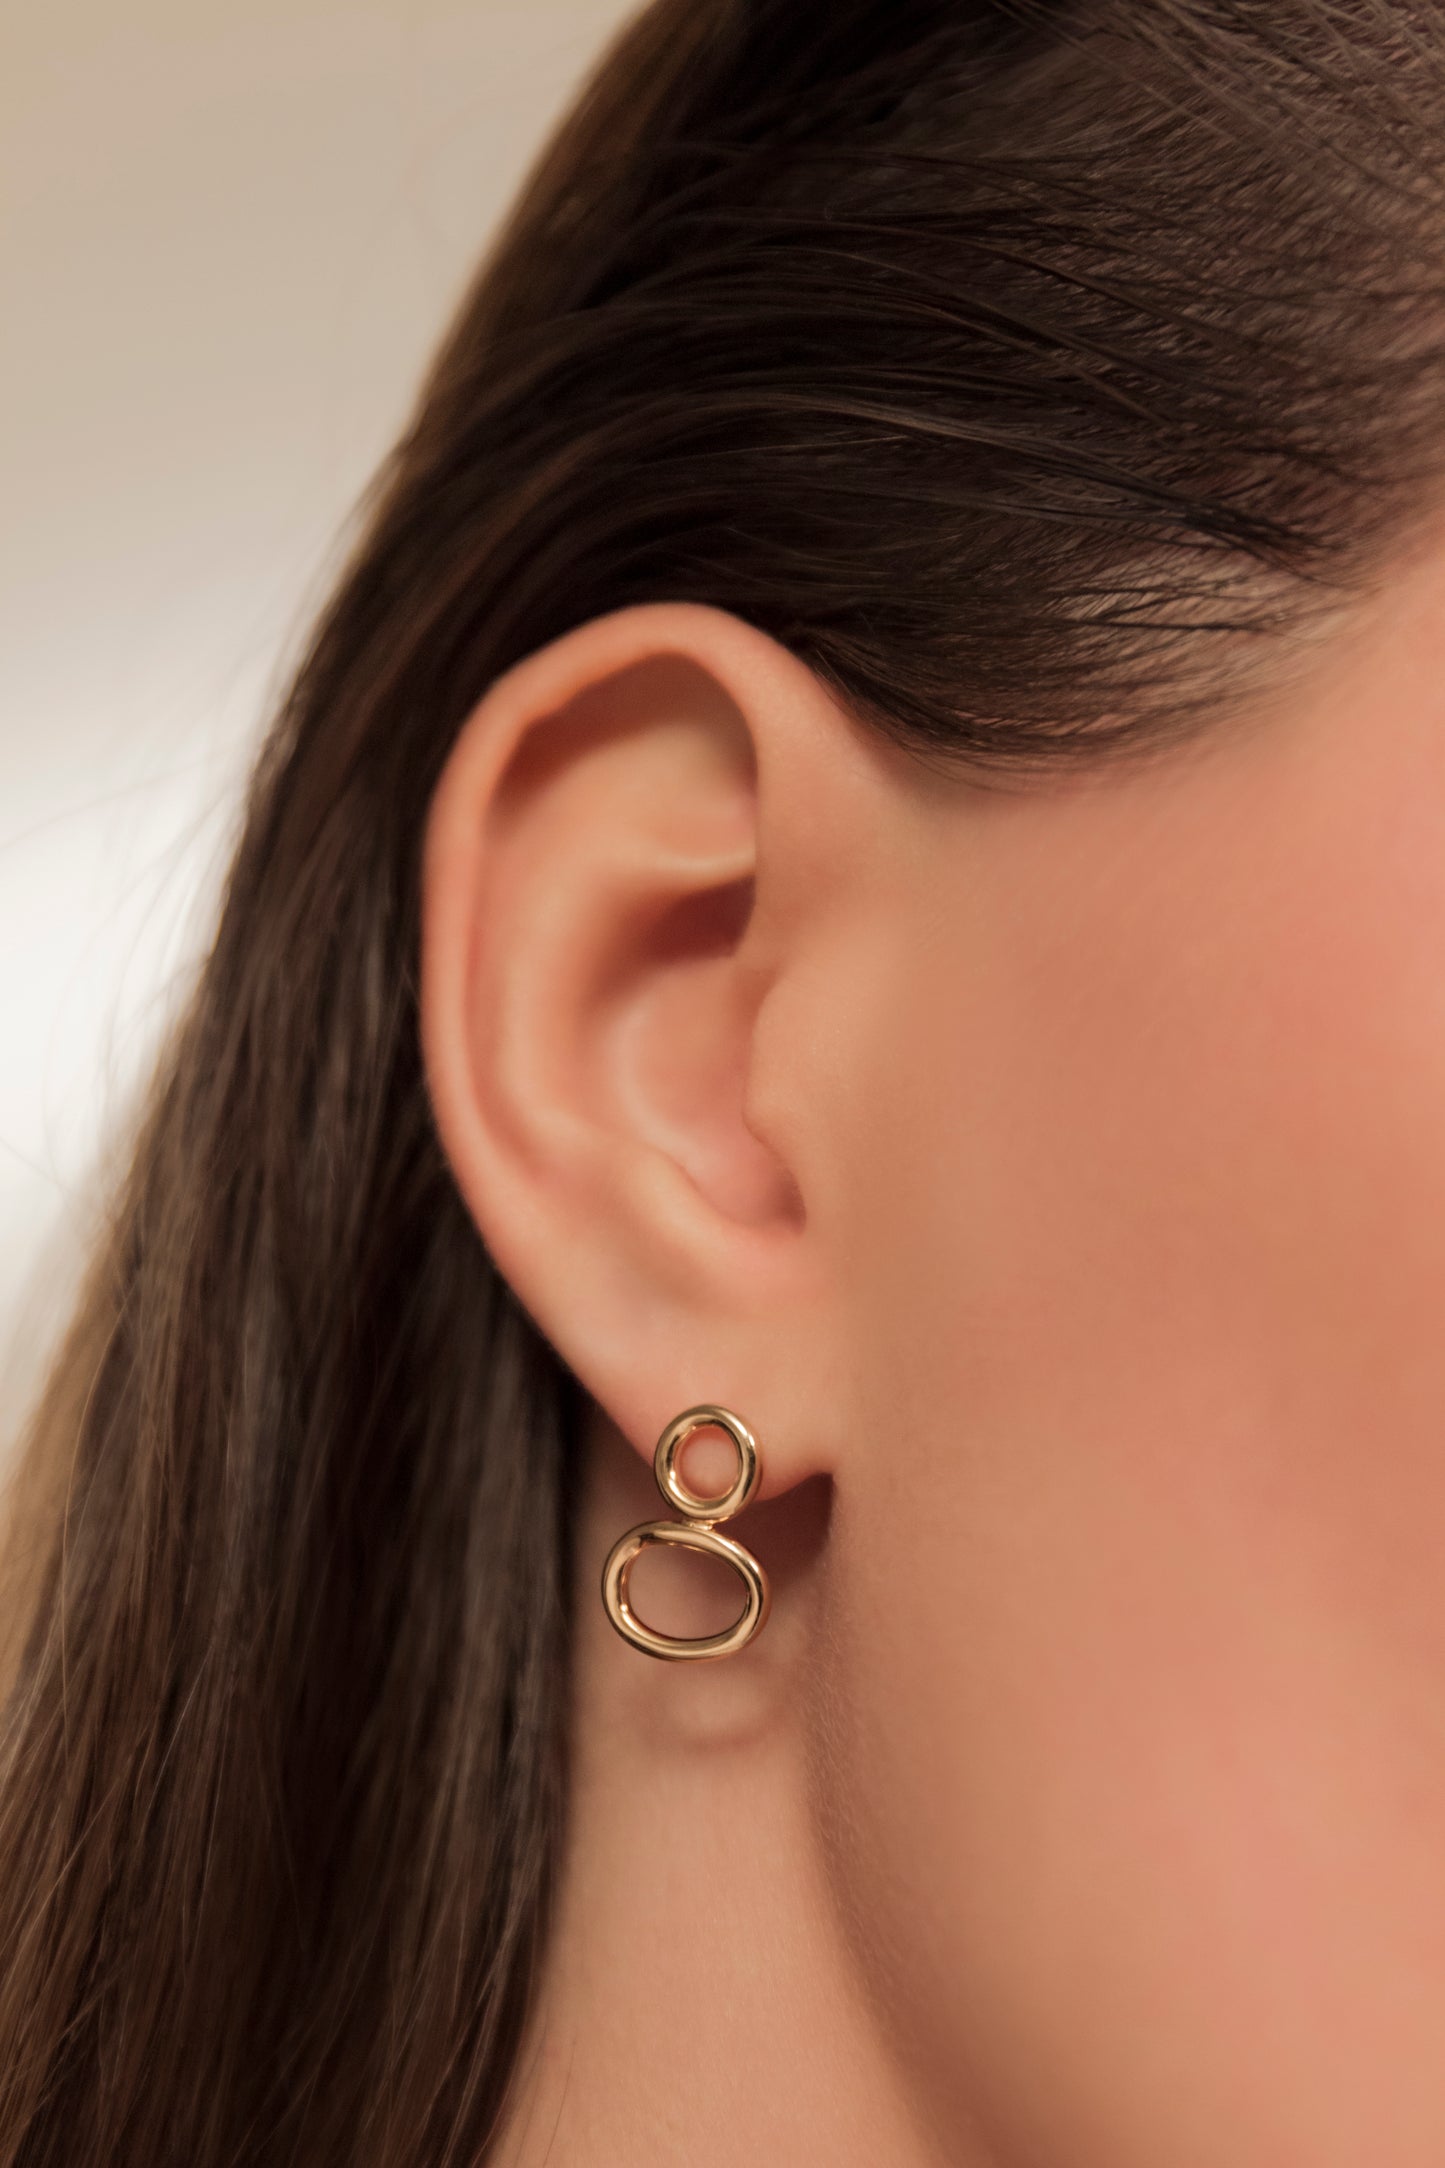 Brie Silver Earrings by Pieretti